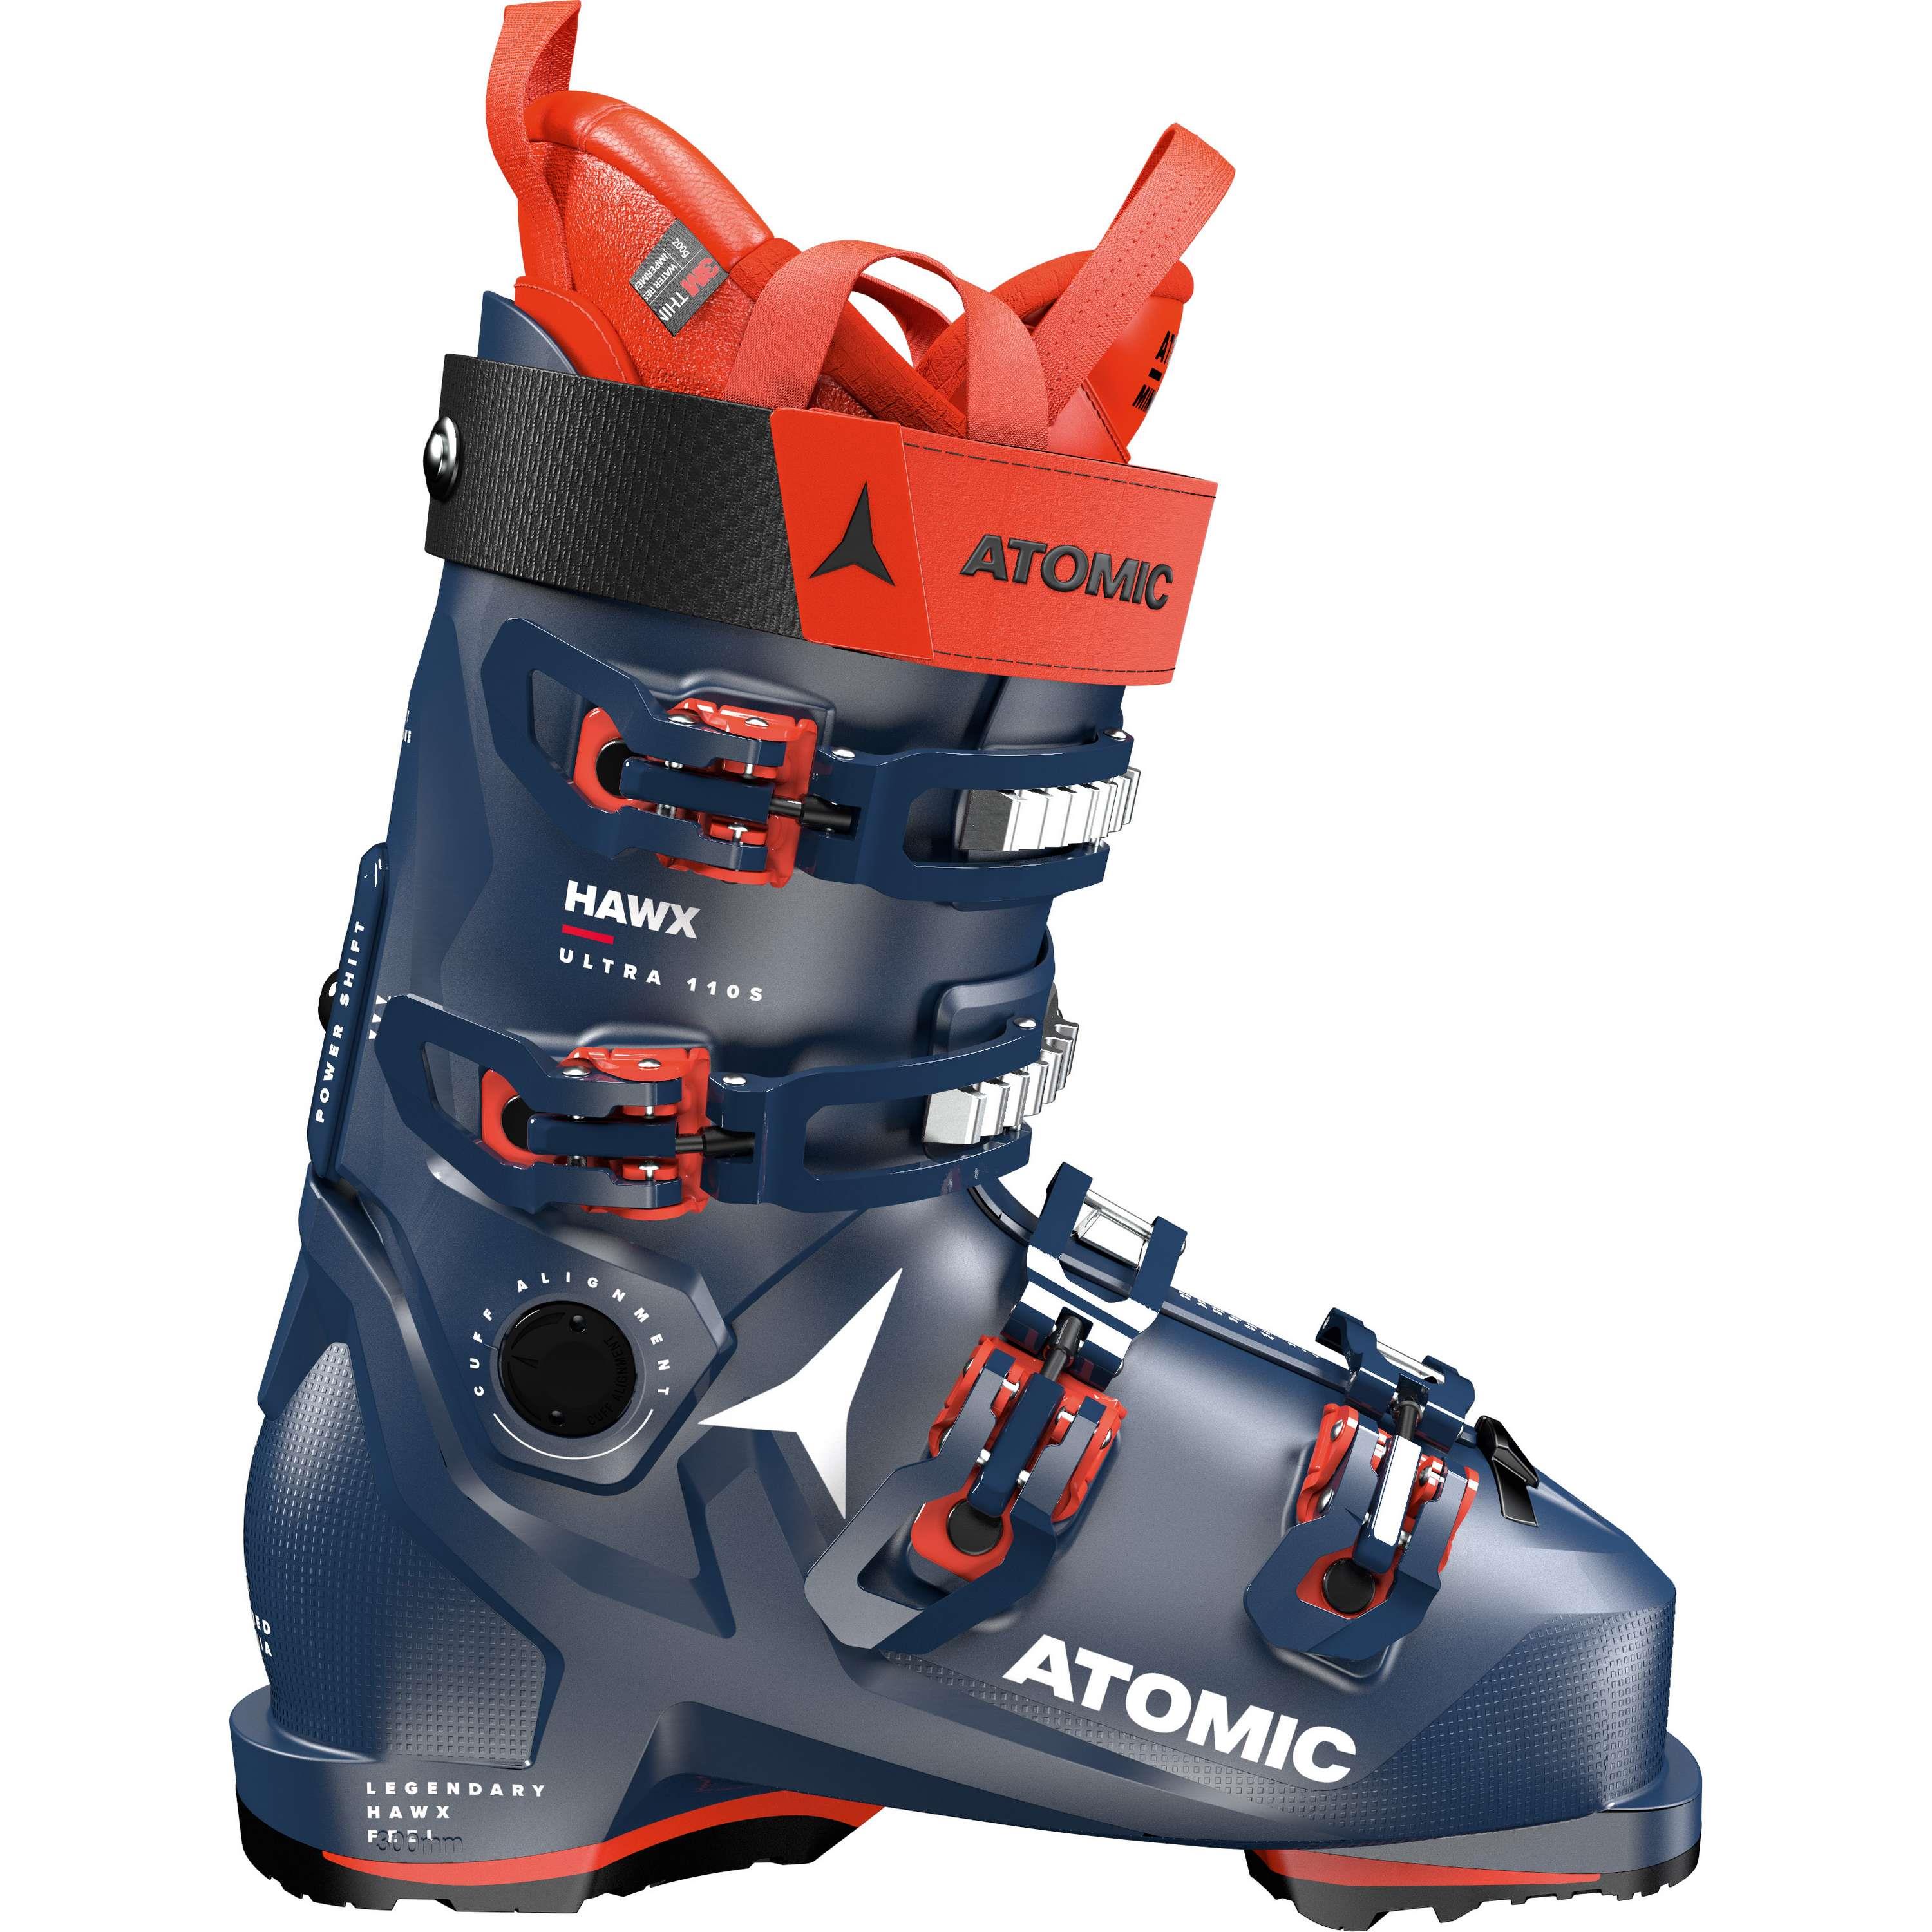 hardwerkend Vertellen knoflook Atomic Hawx Ultra 110 S GW skischoenen heren dark blue red